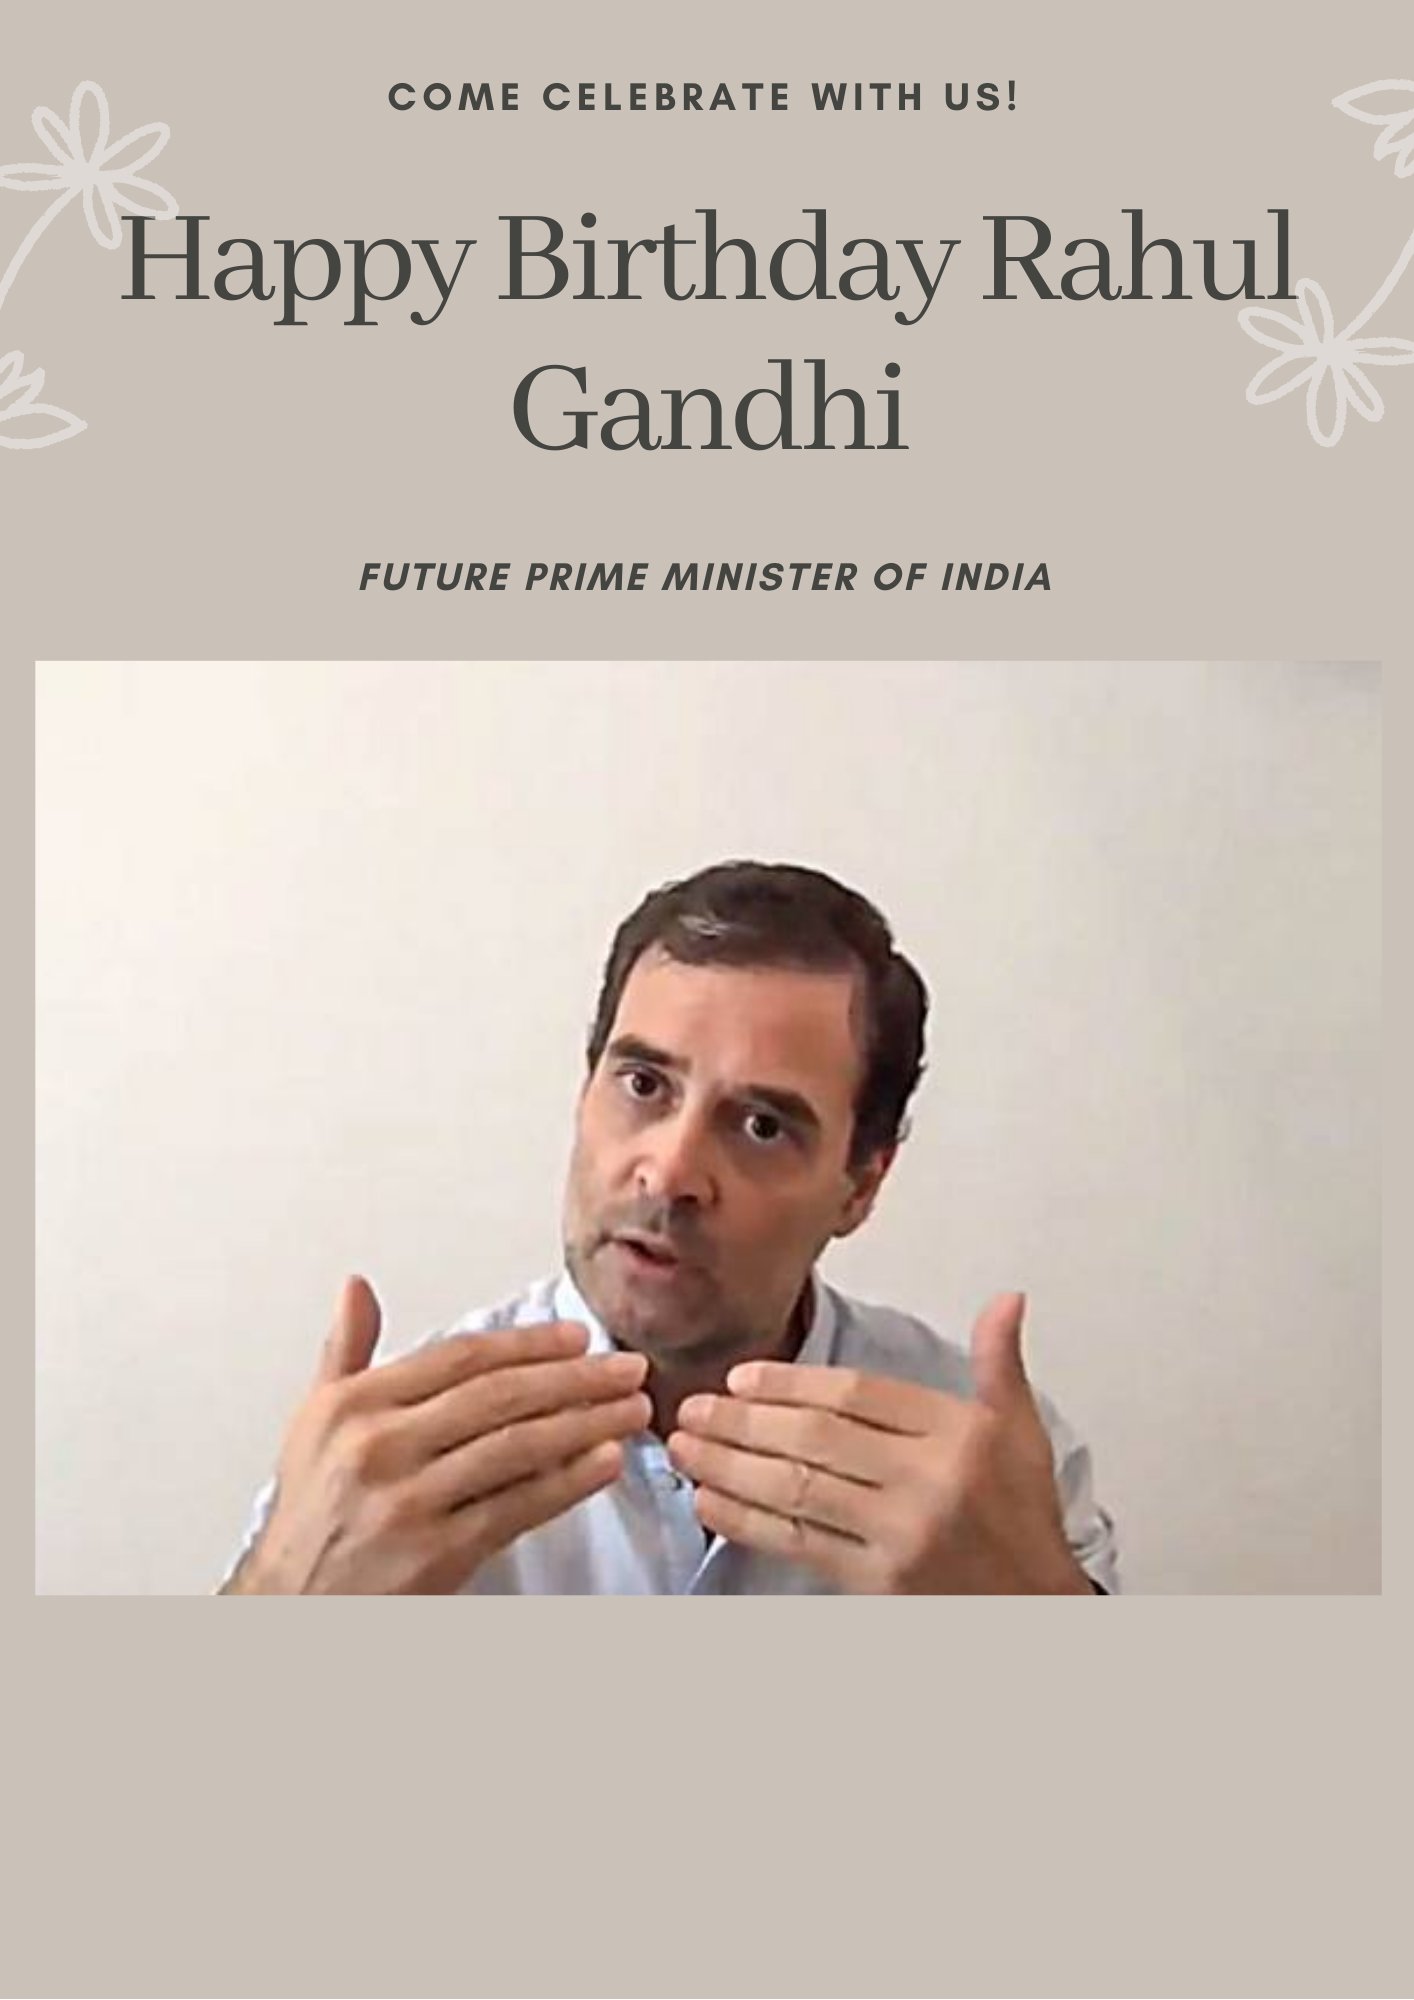 Happy birthday Rahul Gandhi ji 